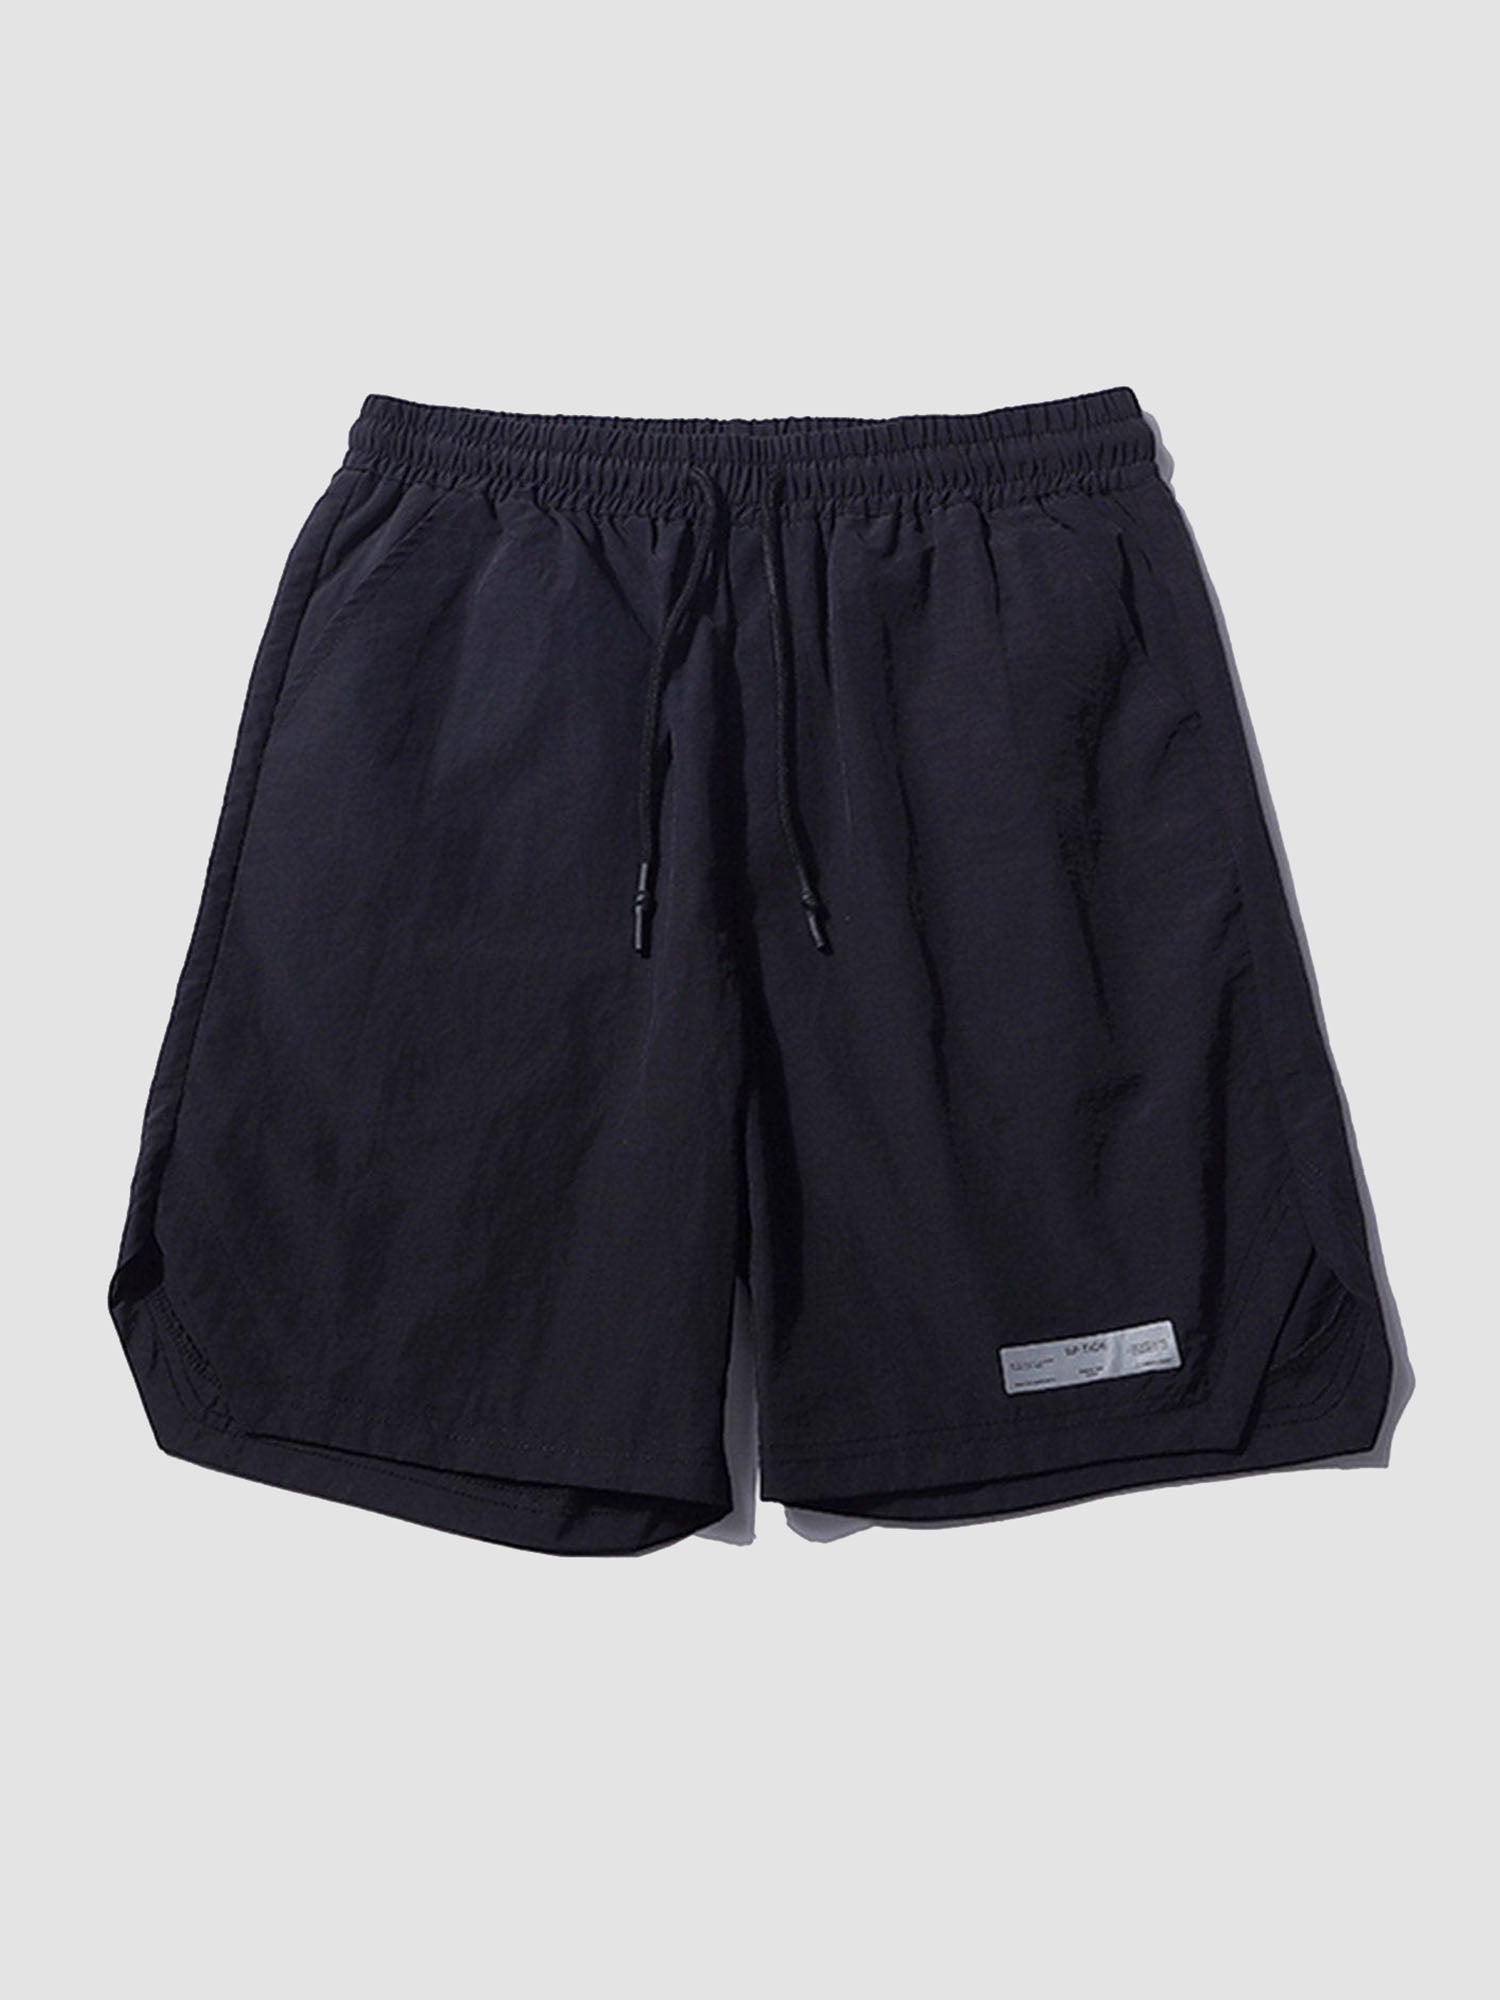 JUSTNOTAG Solid Color Cargo Shorts Drawstring Waist Shorts